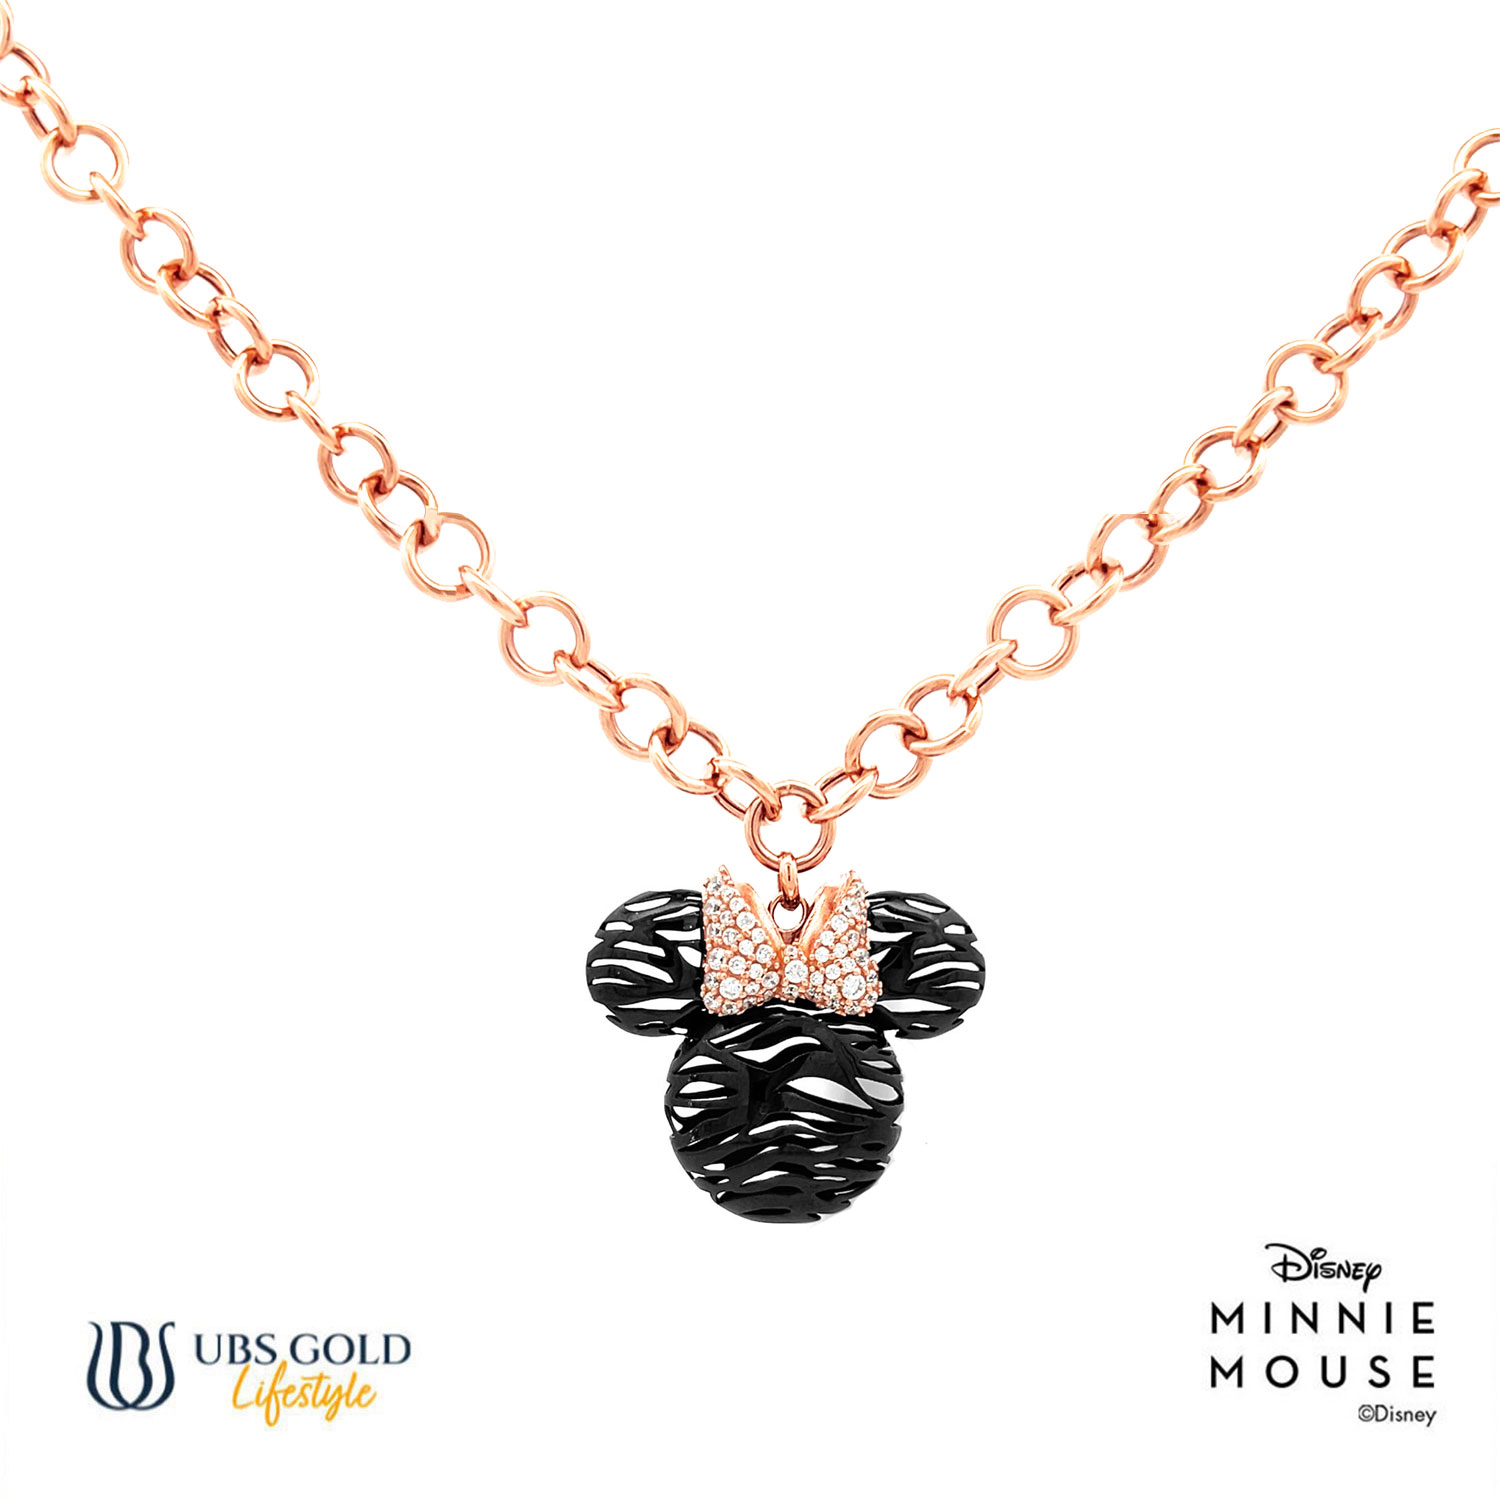 UBS Gold Kalung Emas Disney Minnie Mouse - Hky0214 - 17K